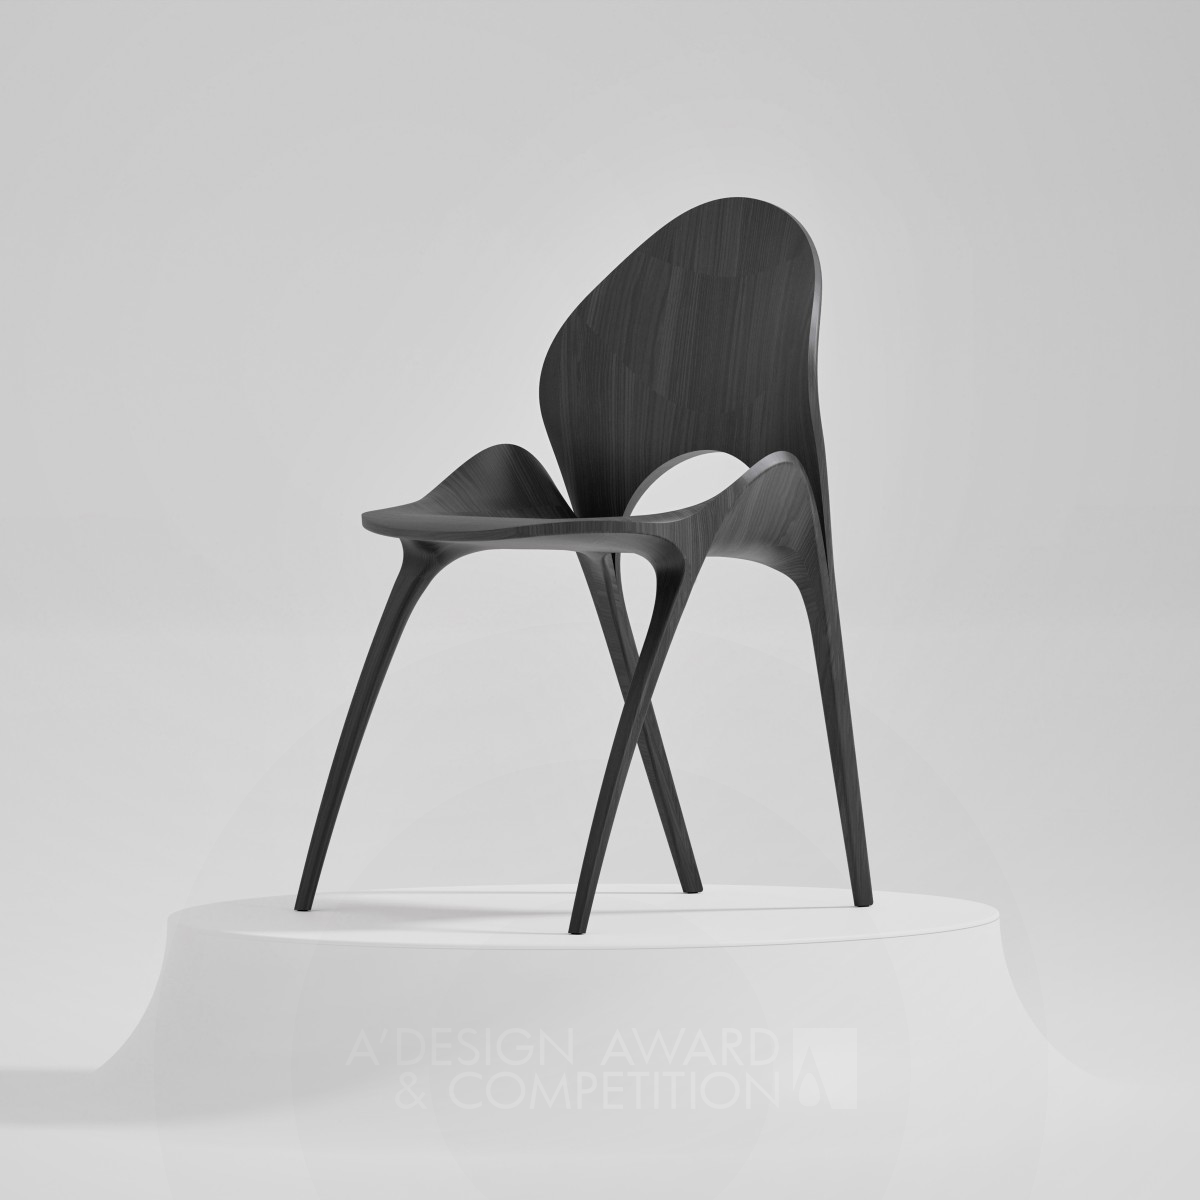 Hana Chair by Pablo Vidiella